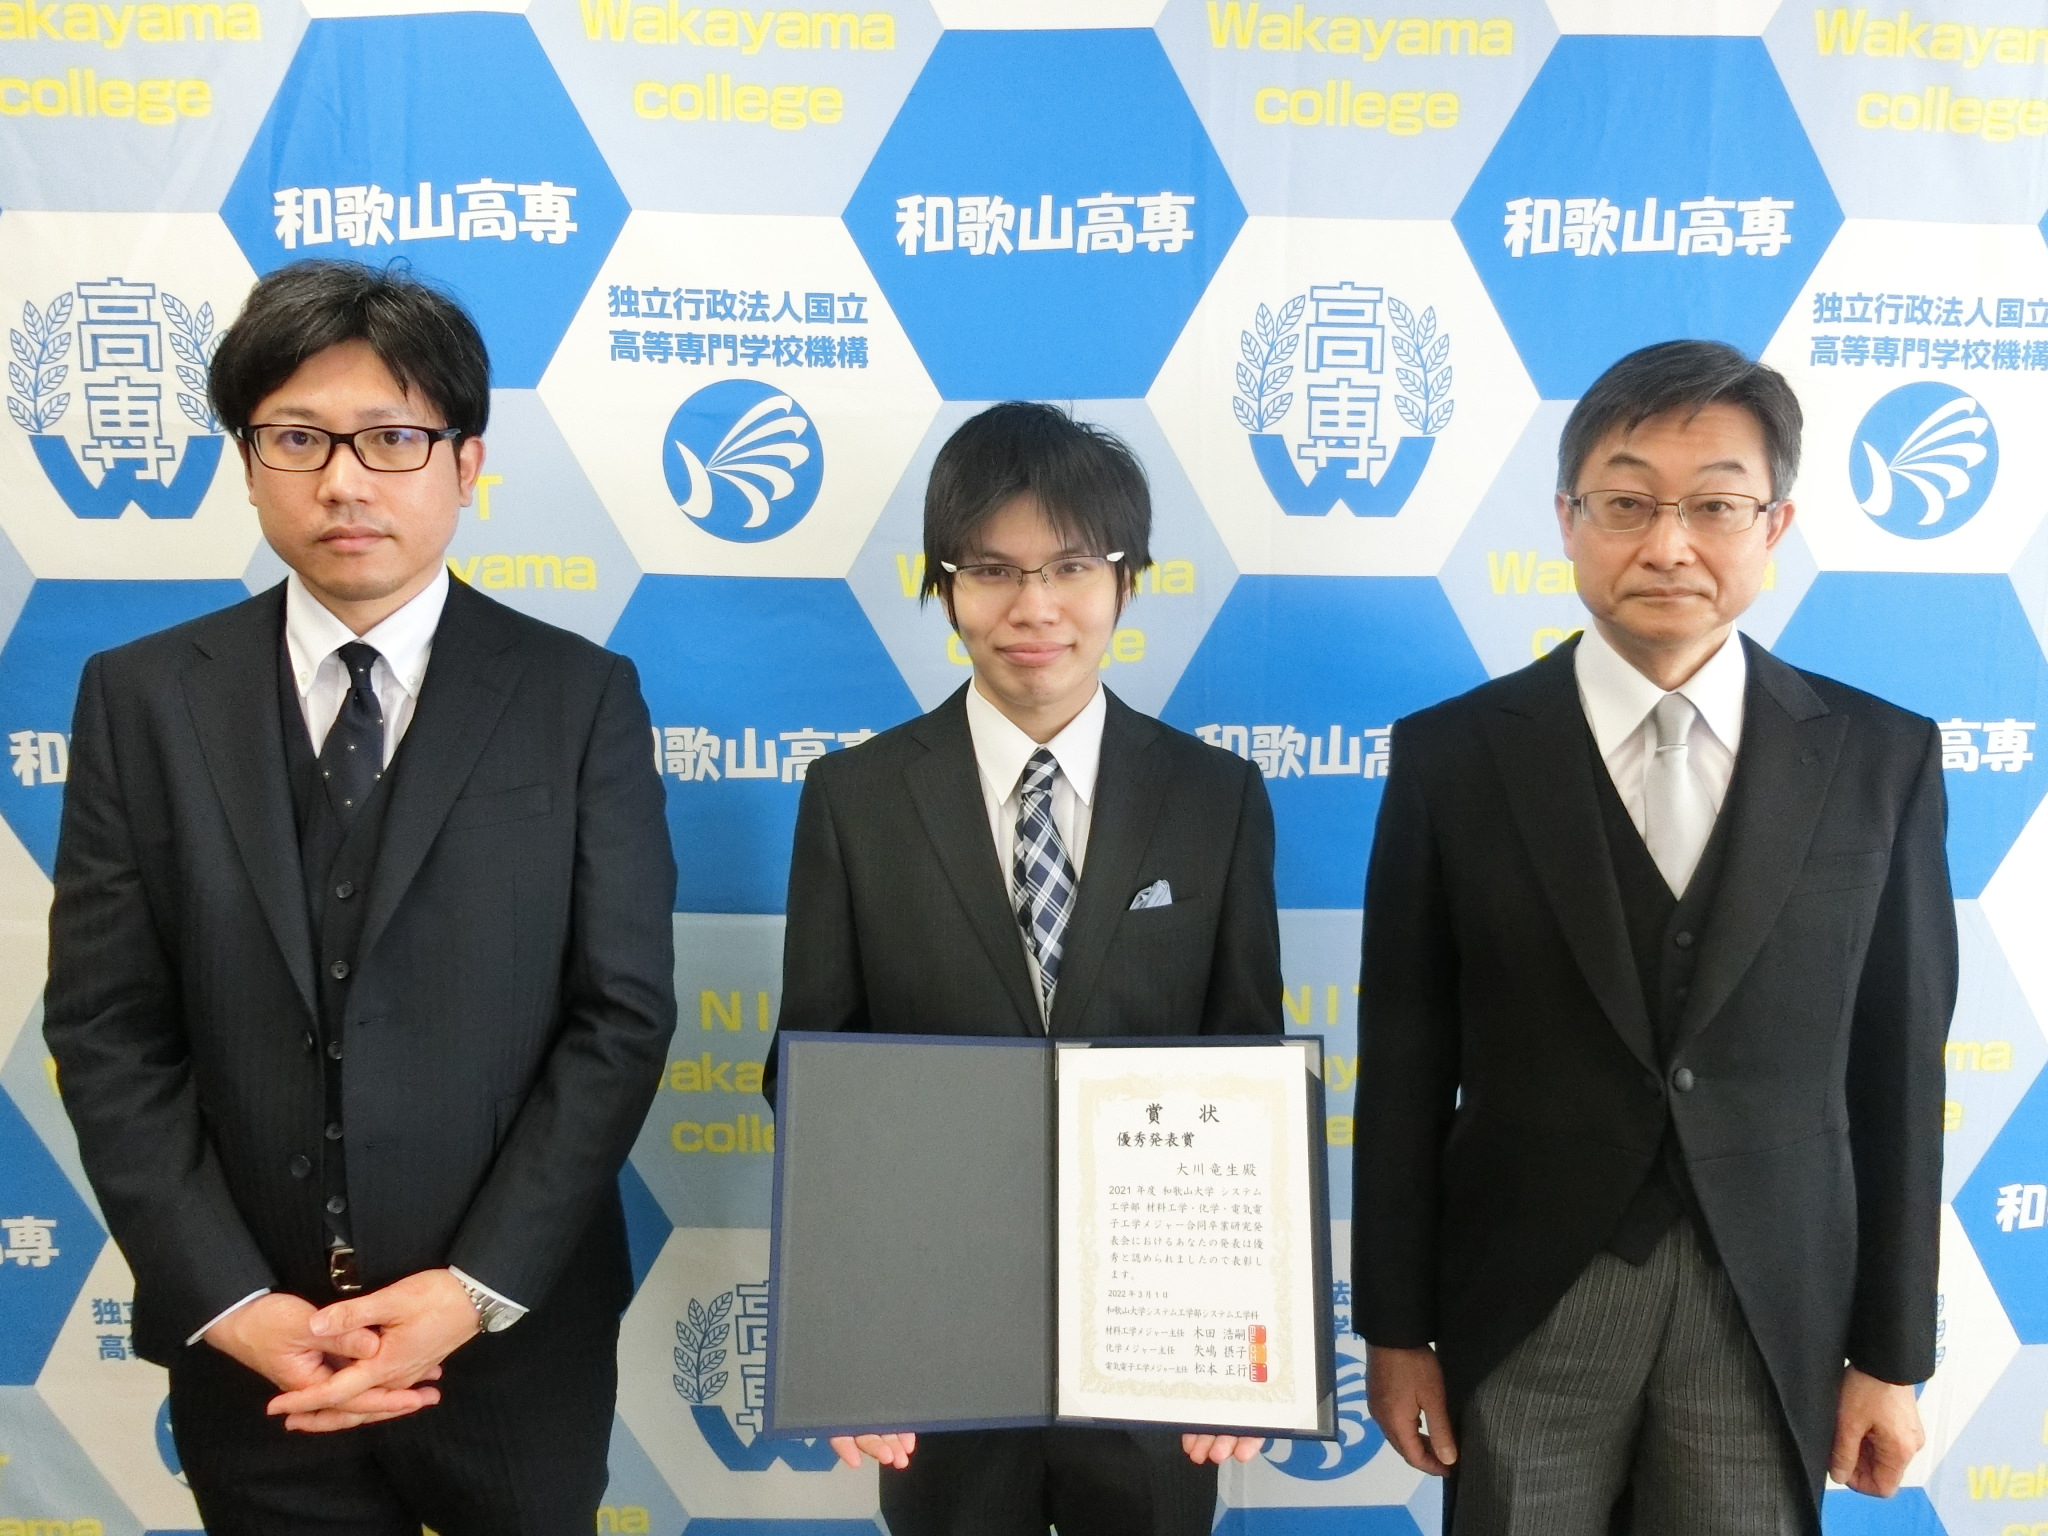 受賞報告の様子 （左から岩﨑准教授、大川さん、北風校長）